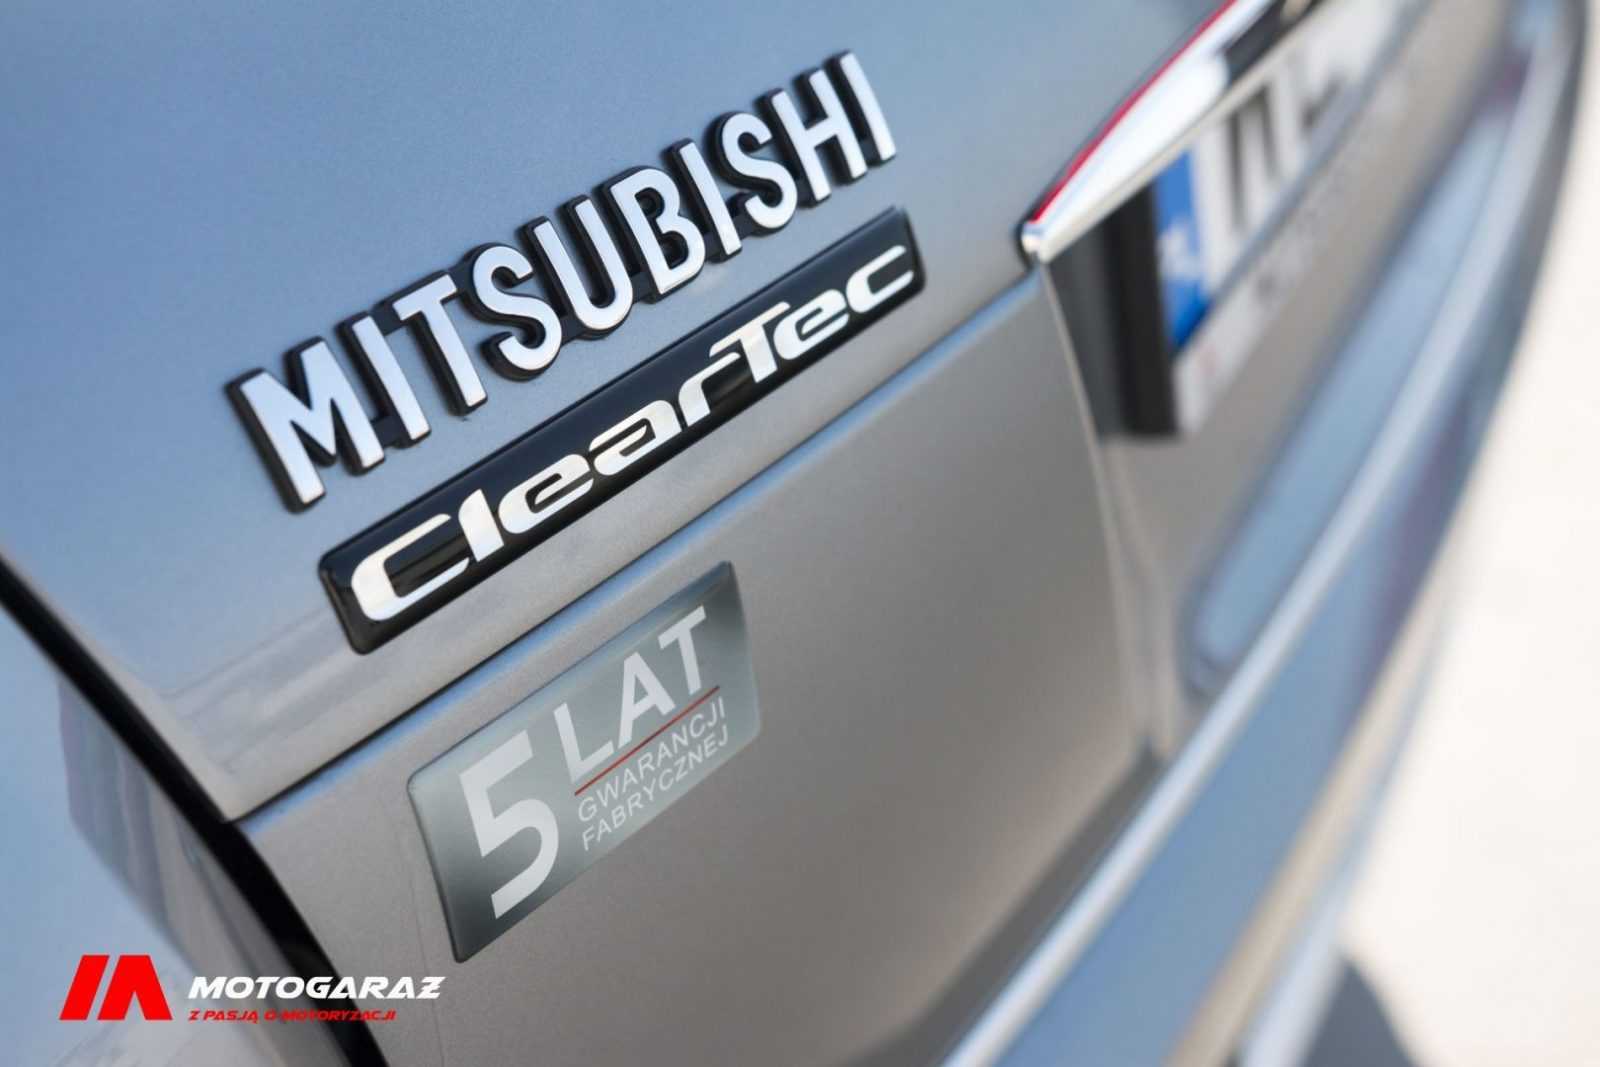 Mitsubishi Eclipse Cross / fot. Jakub Markiewicz